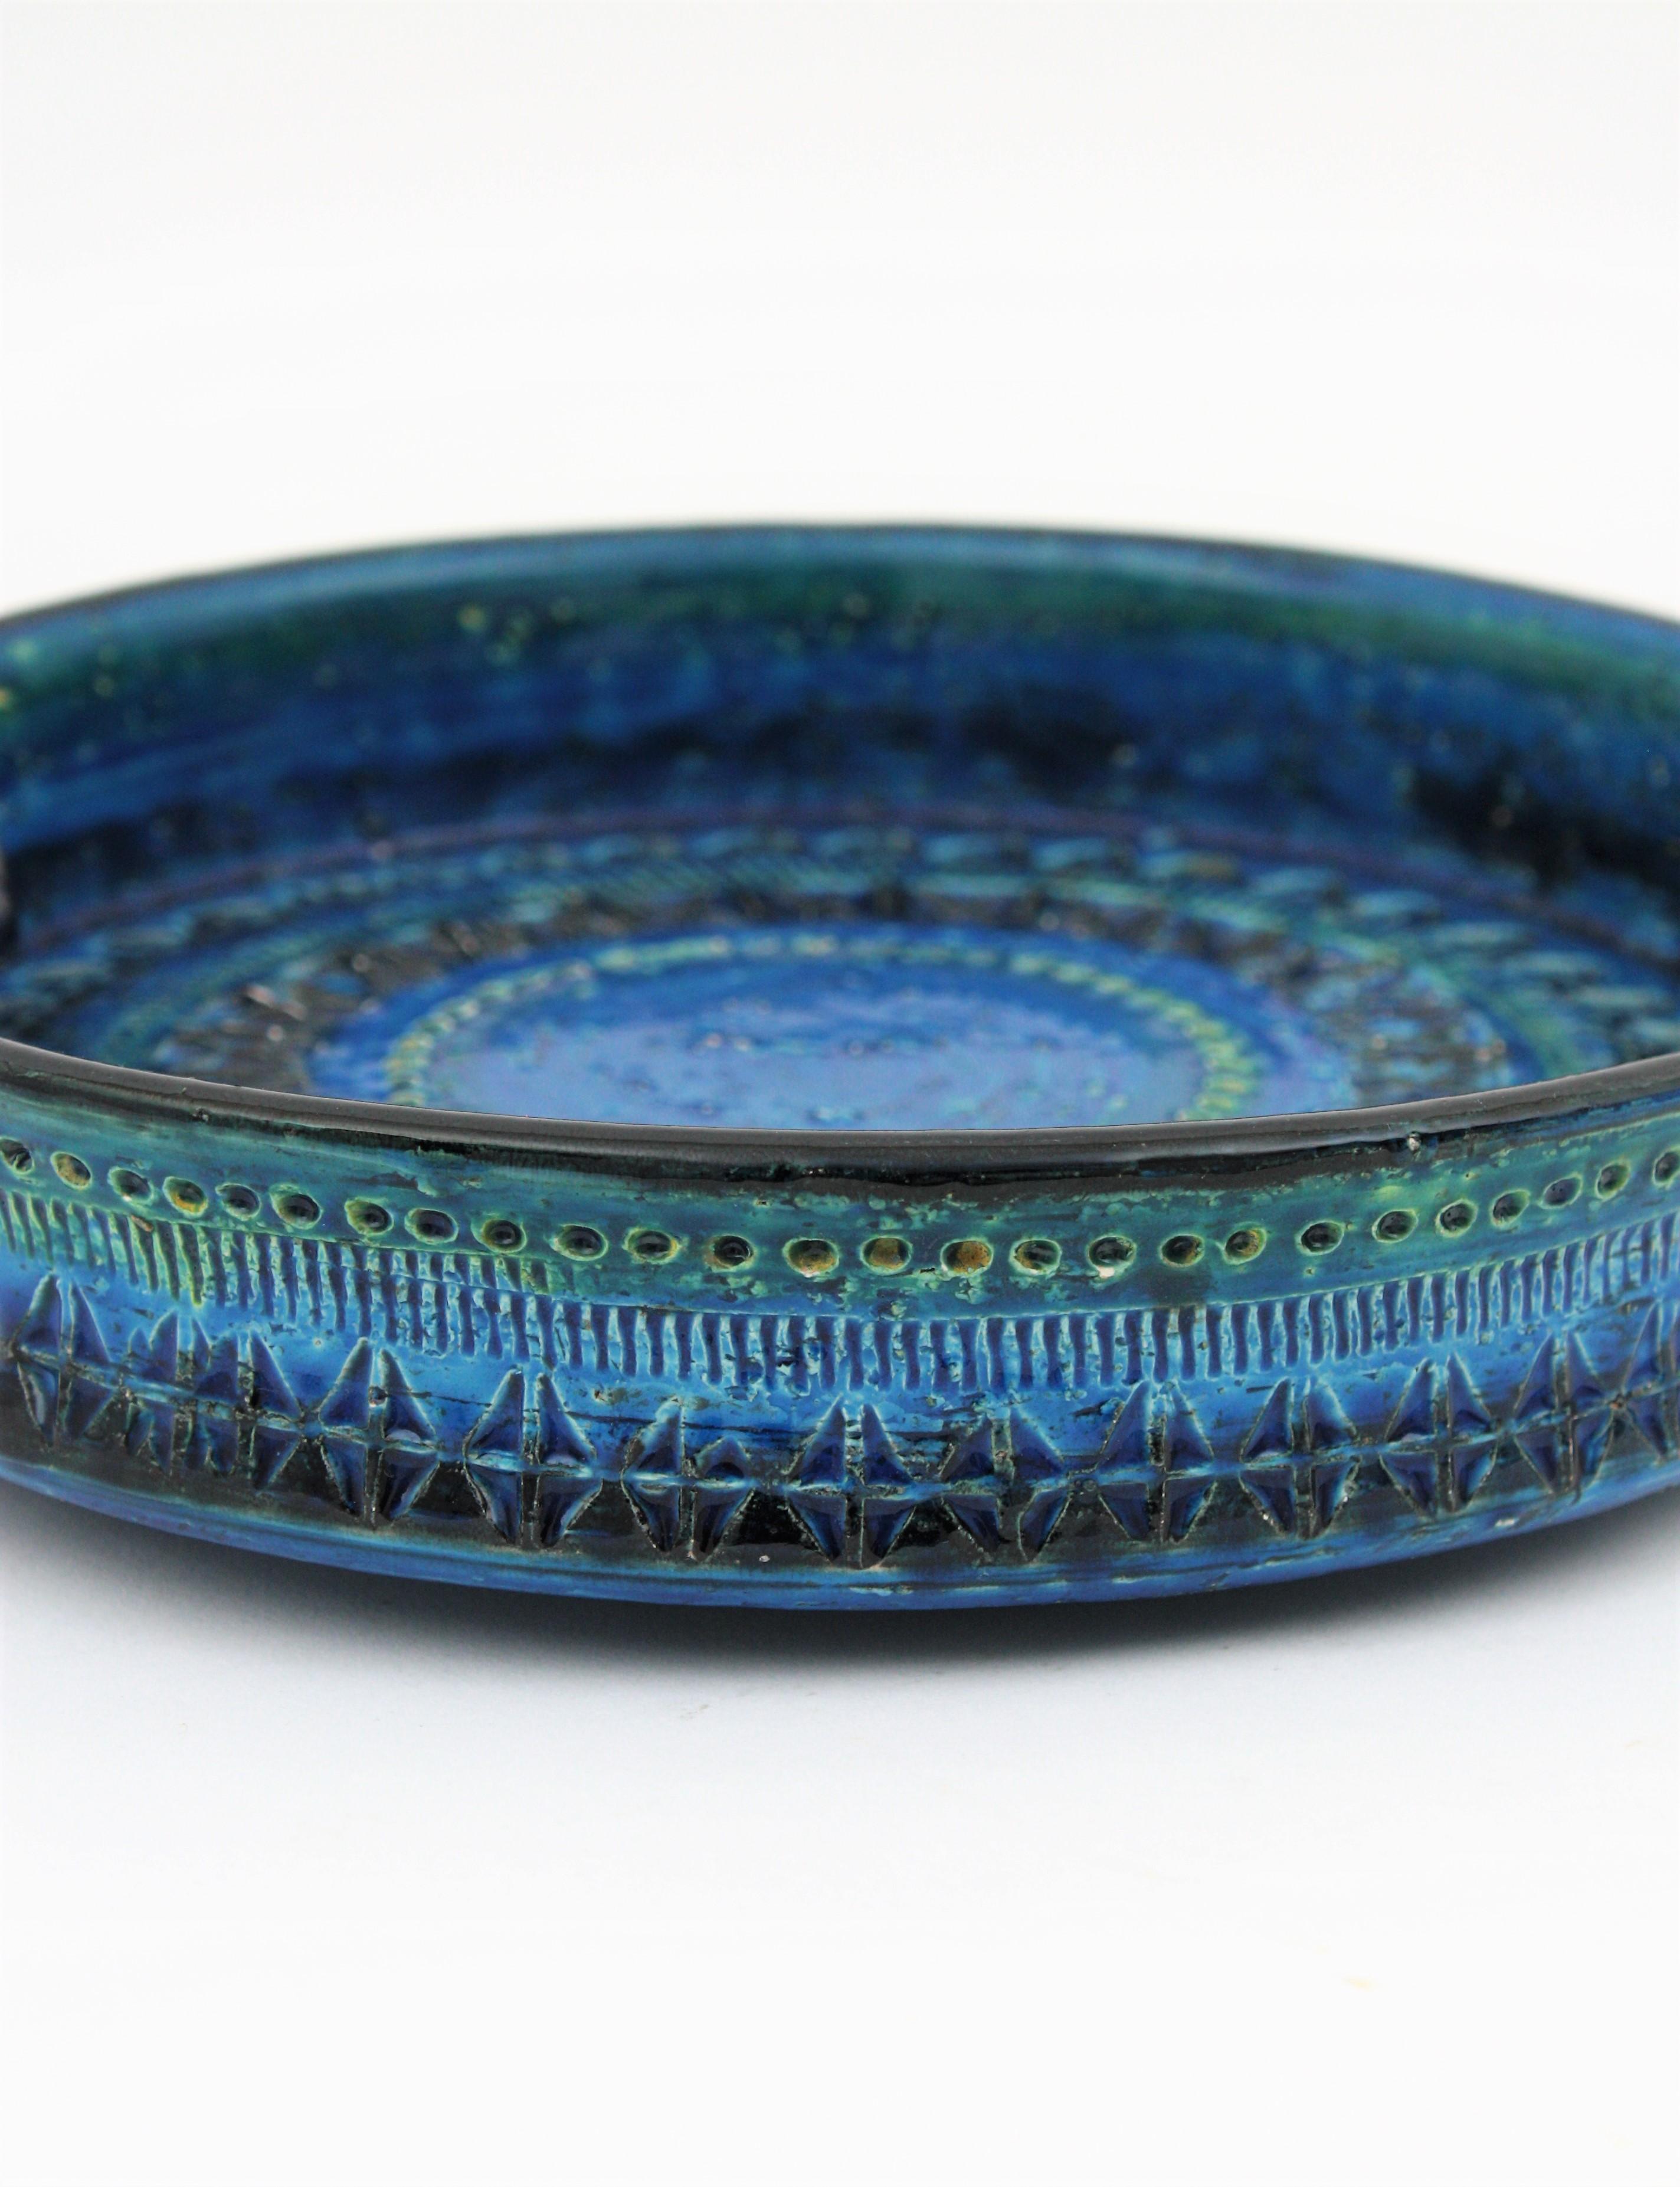 Bitossi Aldo Londi Rimini Blue Ceramic XL Round Centerpiece Bowl Ashtray In Excellent Condition For Sale In Barcelona, ES